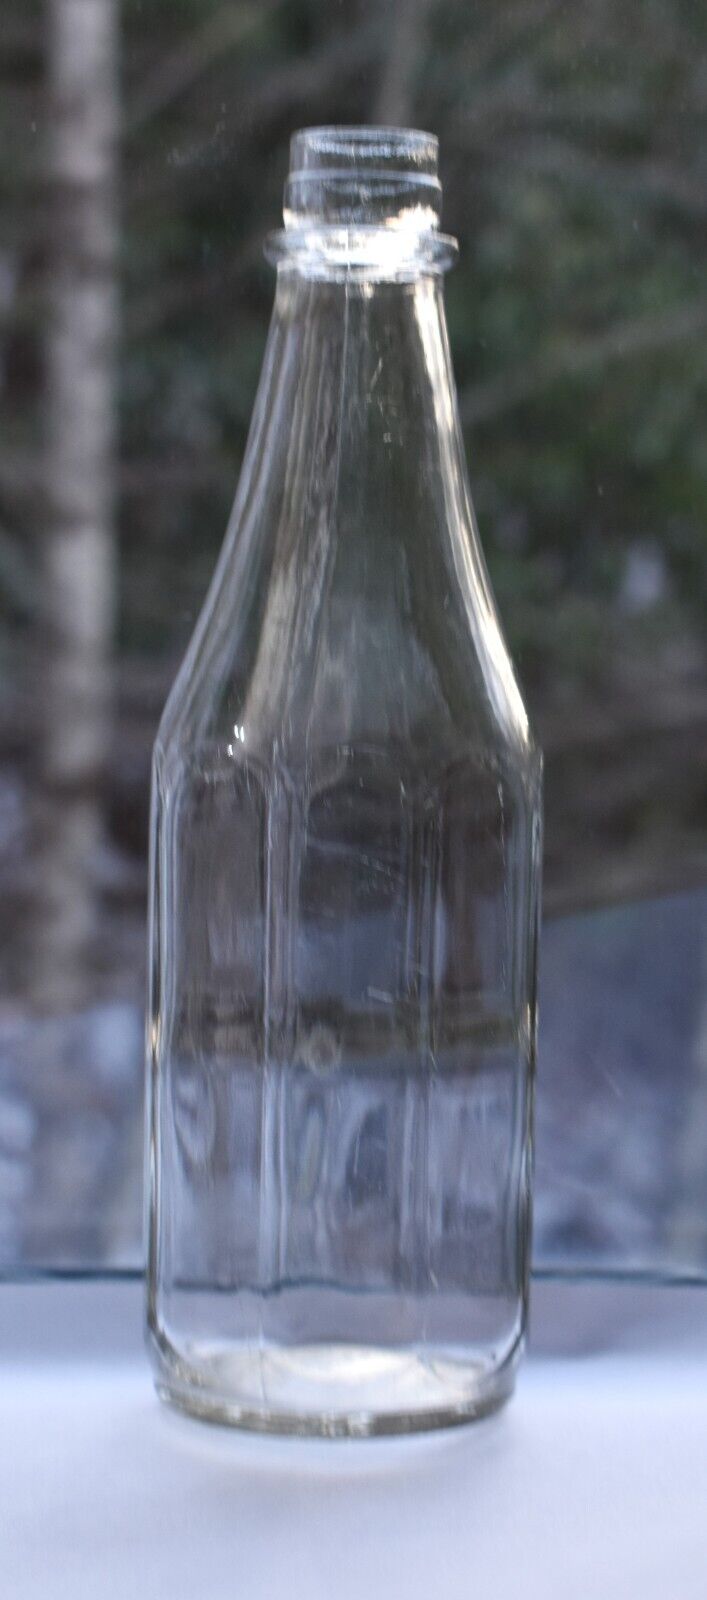 VINTAGE HEINZ TOMATO KETCHUP BOTTLE 8 PANEL Rare 1947 Armstrong Glass 12 oz.